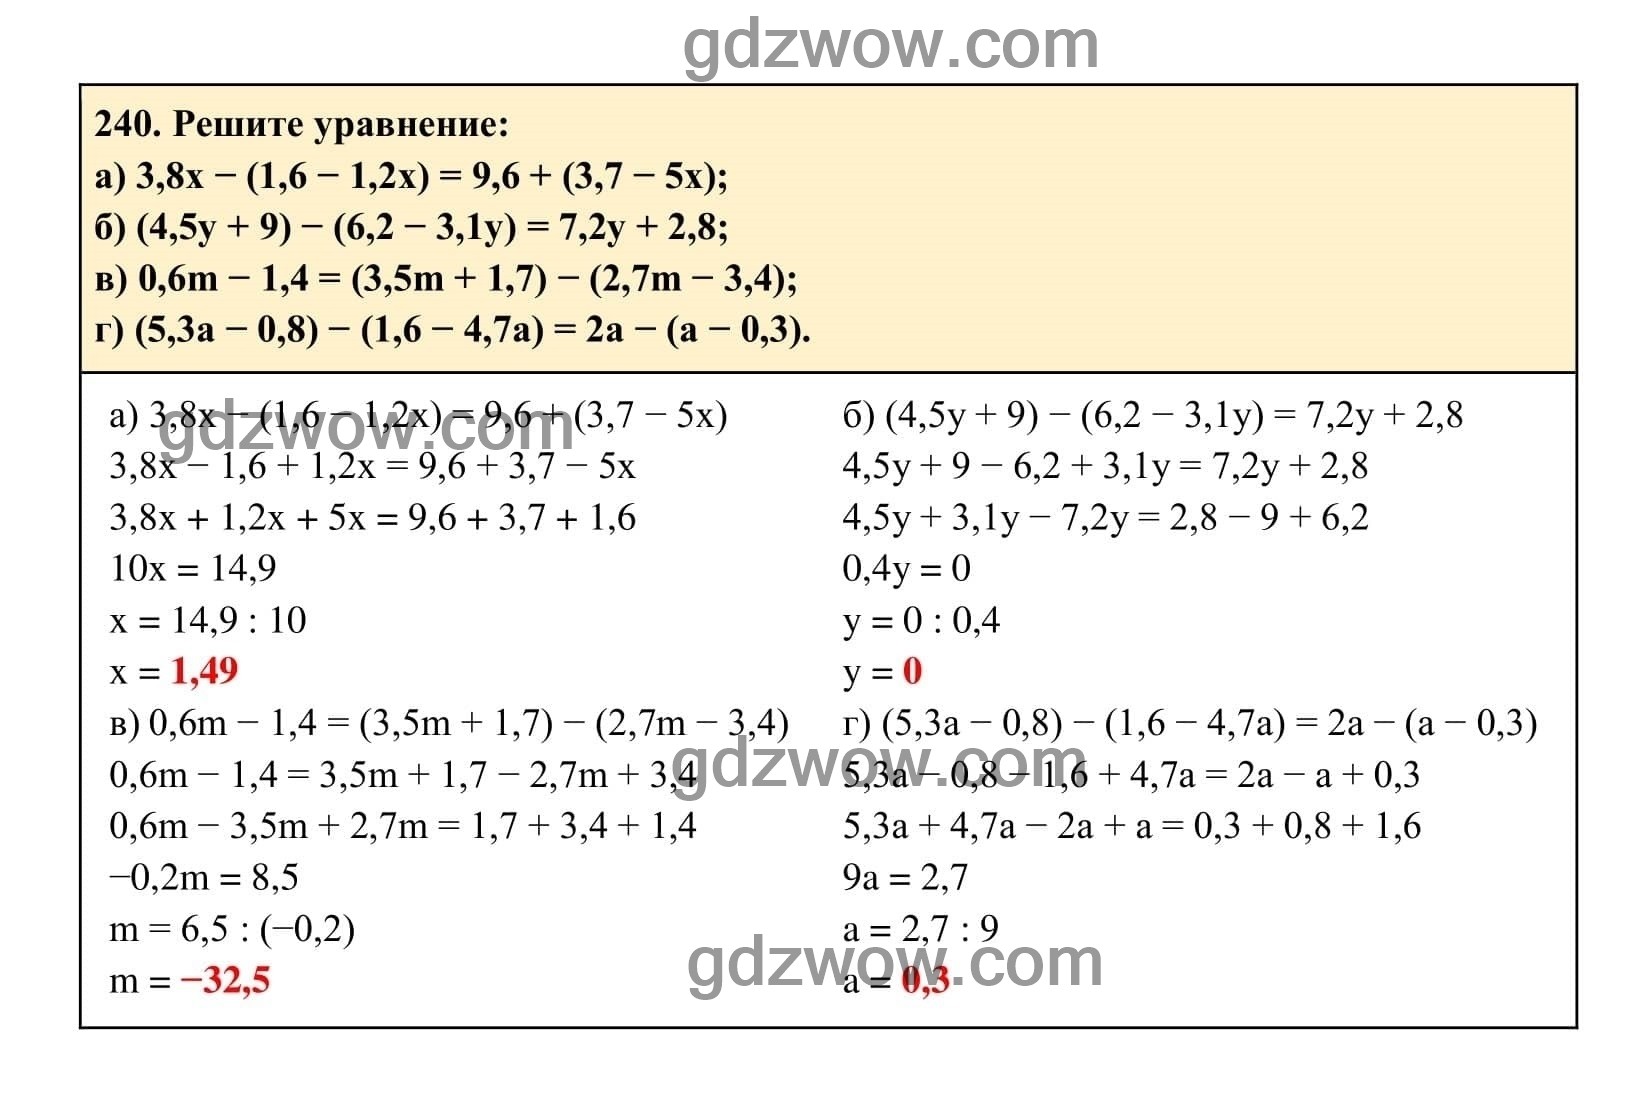 Упражнение 240 - ГДЗ по Алгебре 7 класс Учебник Макарычев (решебник) - GDZwow